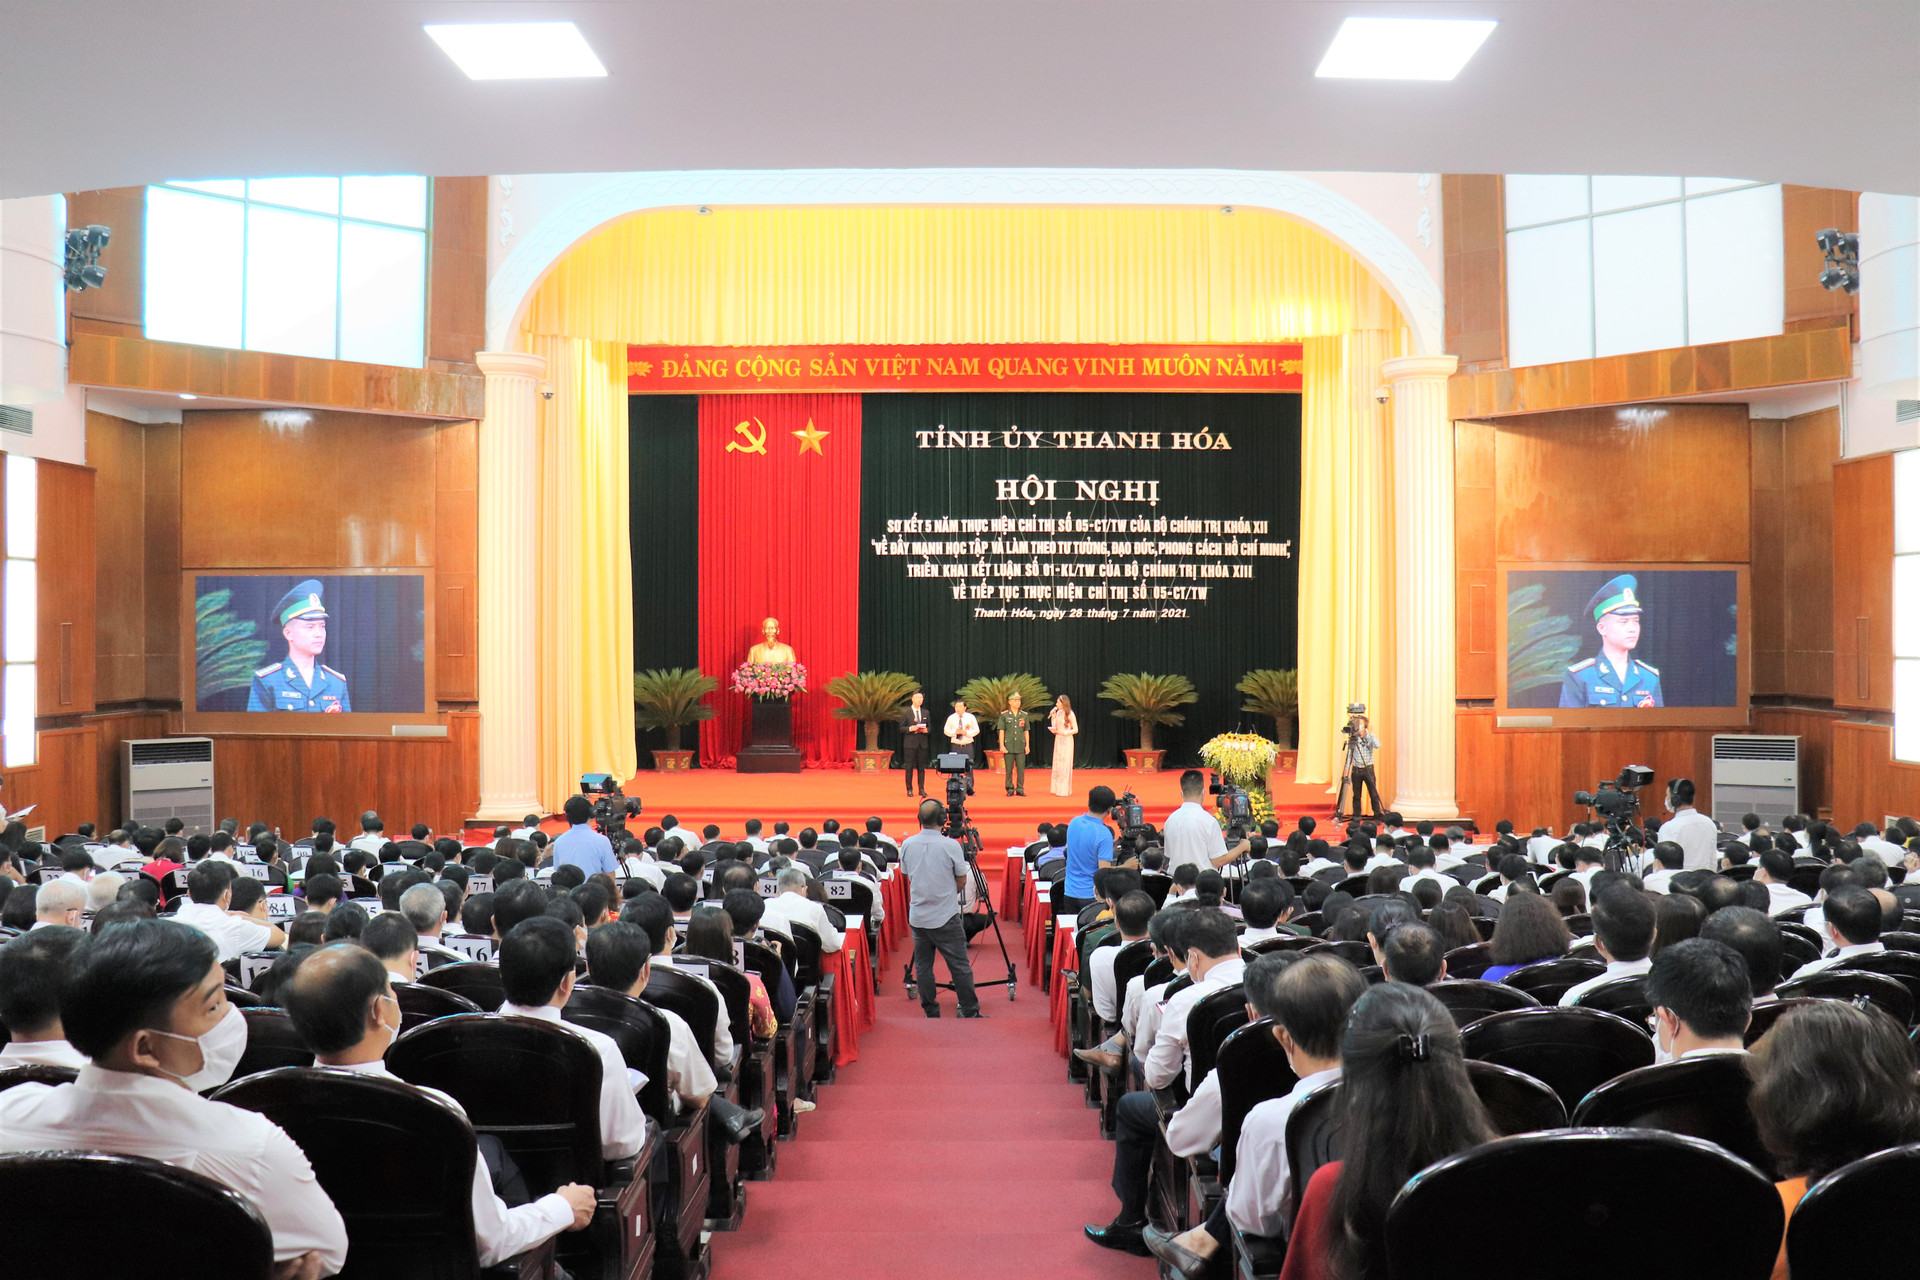 Toàn cảnh chức Hội nghị sơ kết 5 năm thực hiện Chỉ thị số 05-CT/TW của Bộ Chính trị khóa XII “Về đẩy mạnh học tập và làm theo tư tưởng, đạo đức, phong cách Hồ Chí Minh”